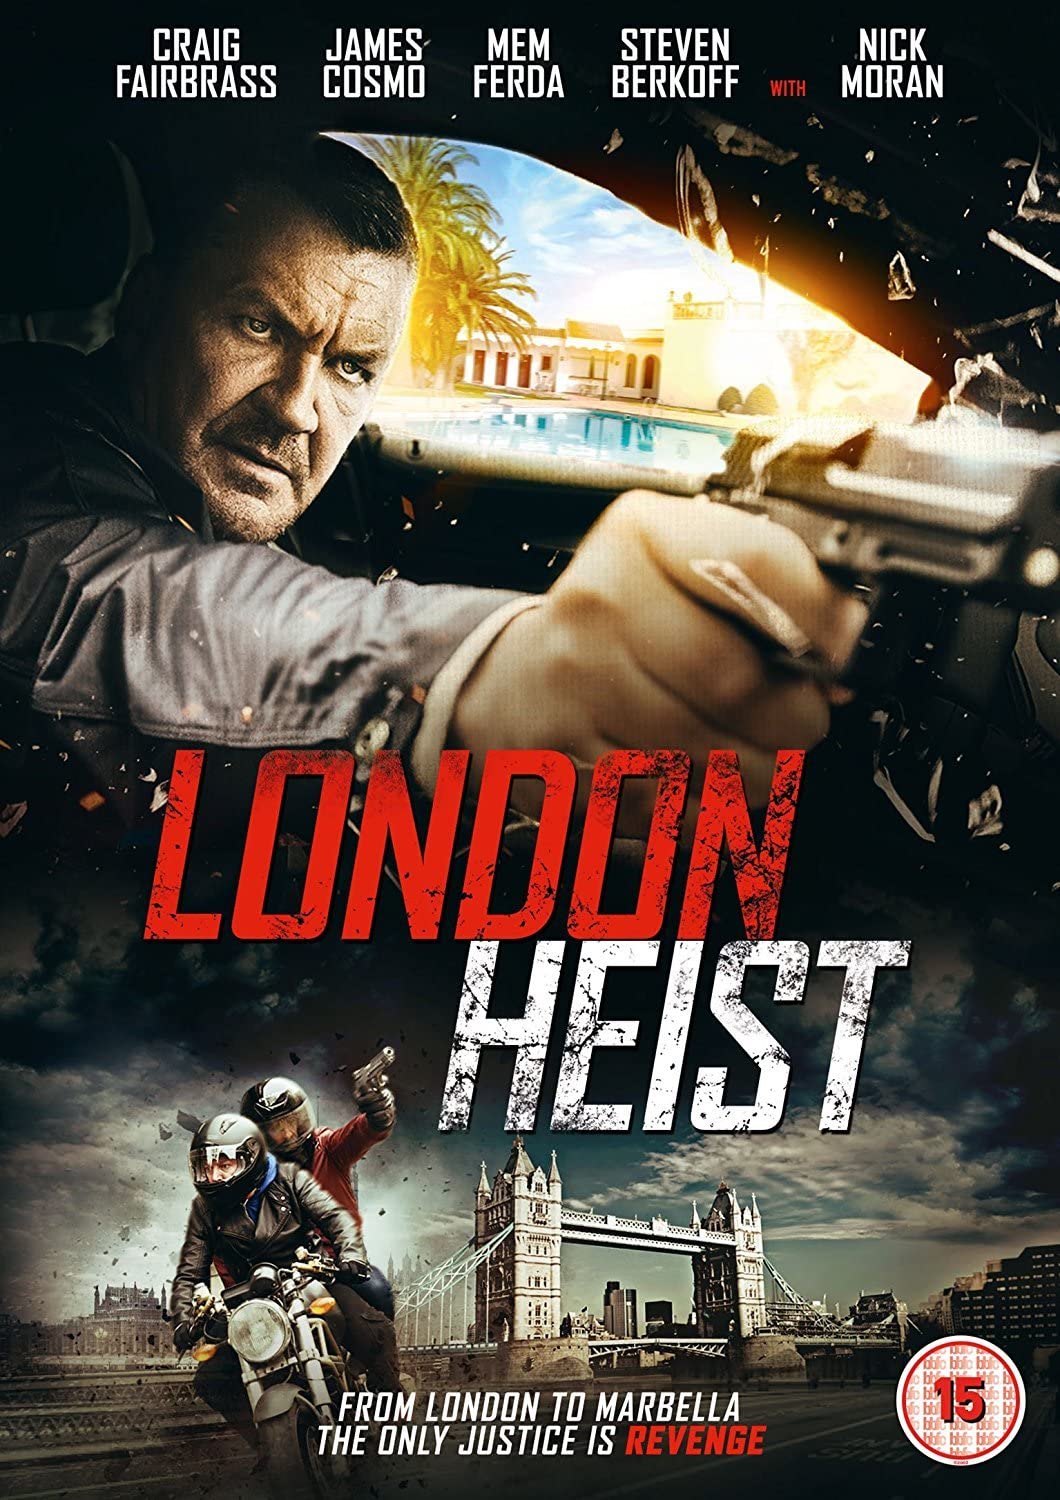 London Heist – Action/Thriller [DVD]